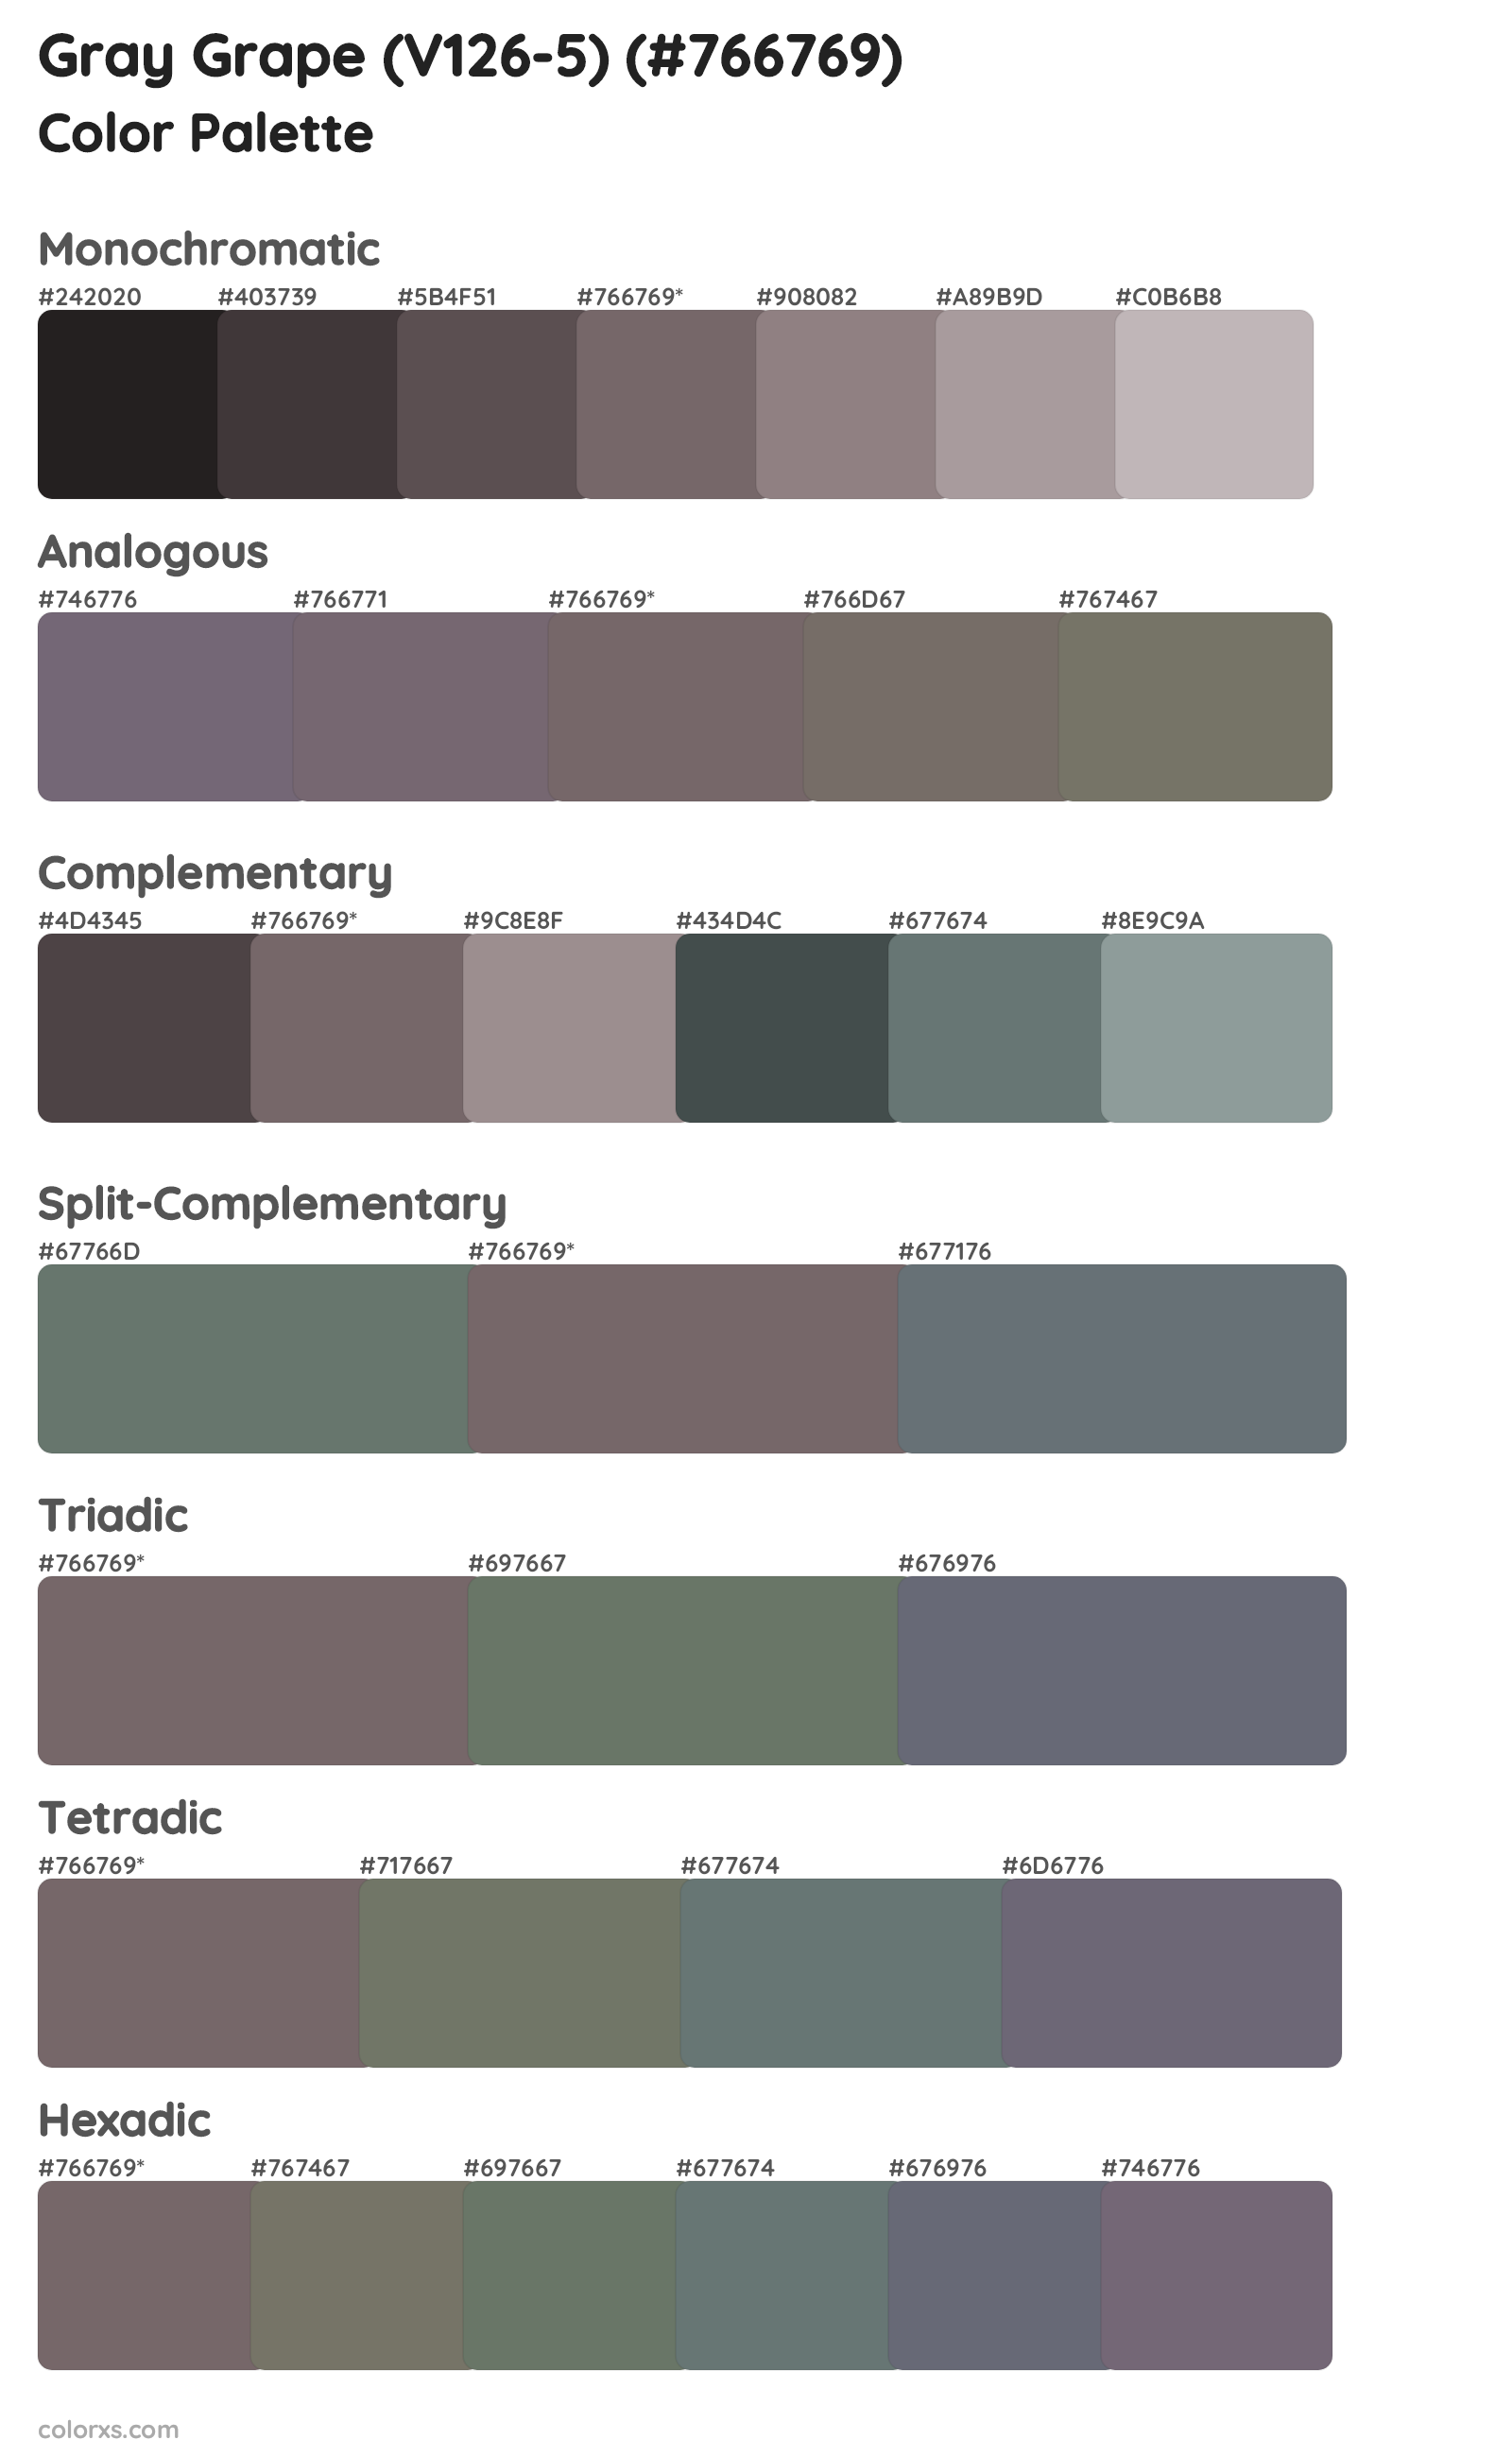 Gray Grape (V126-5) Color Scheme Palettes